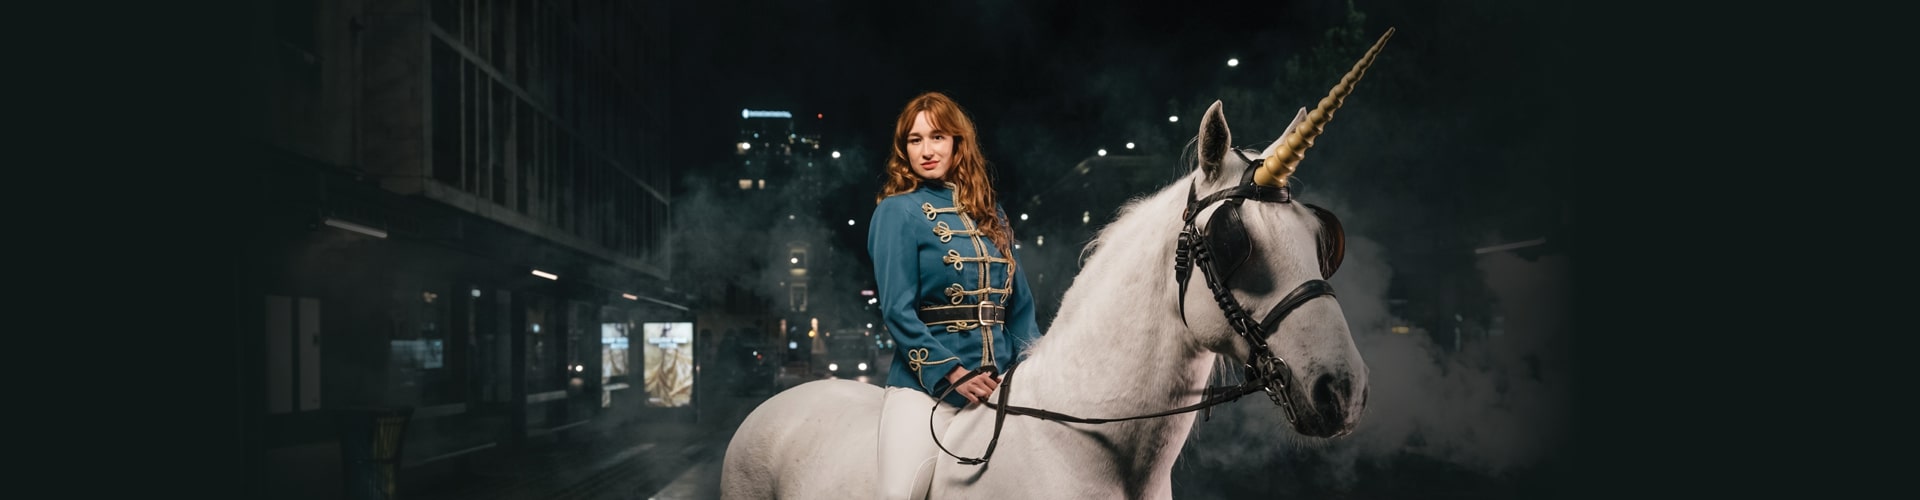 Ženska, ki jezdi belega konja z rogom samoroga v mestu.